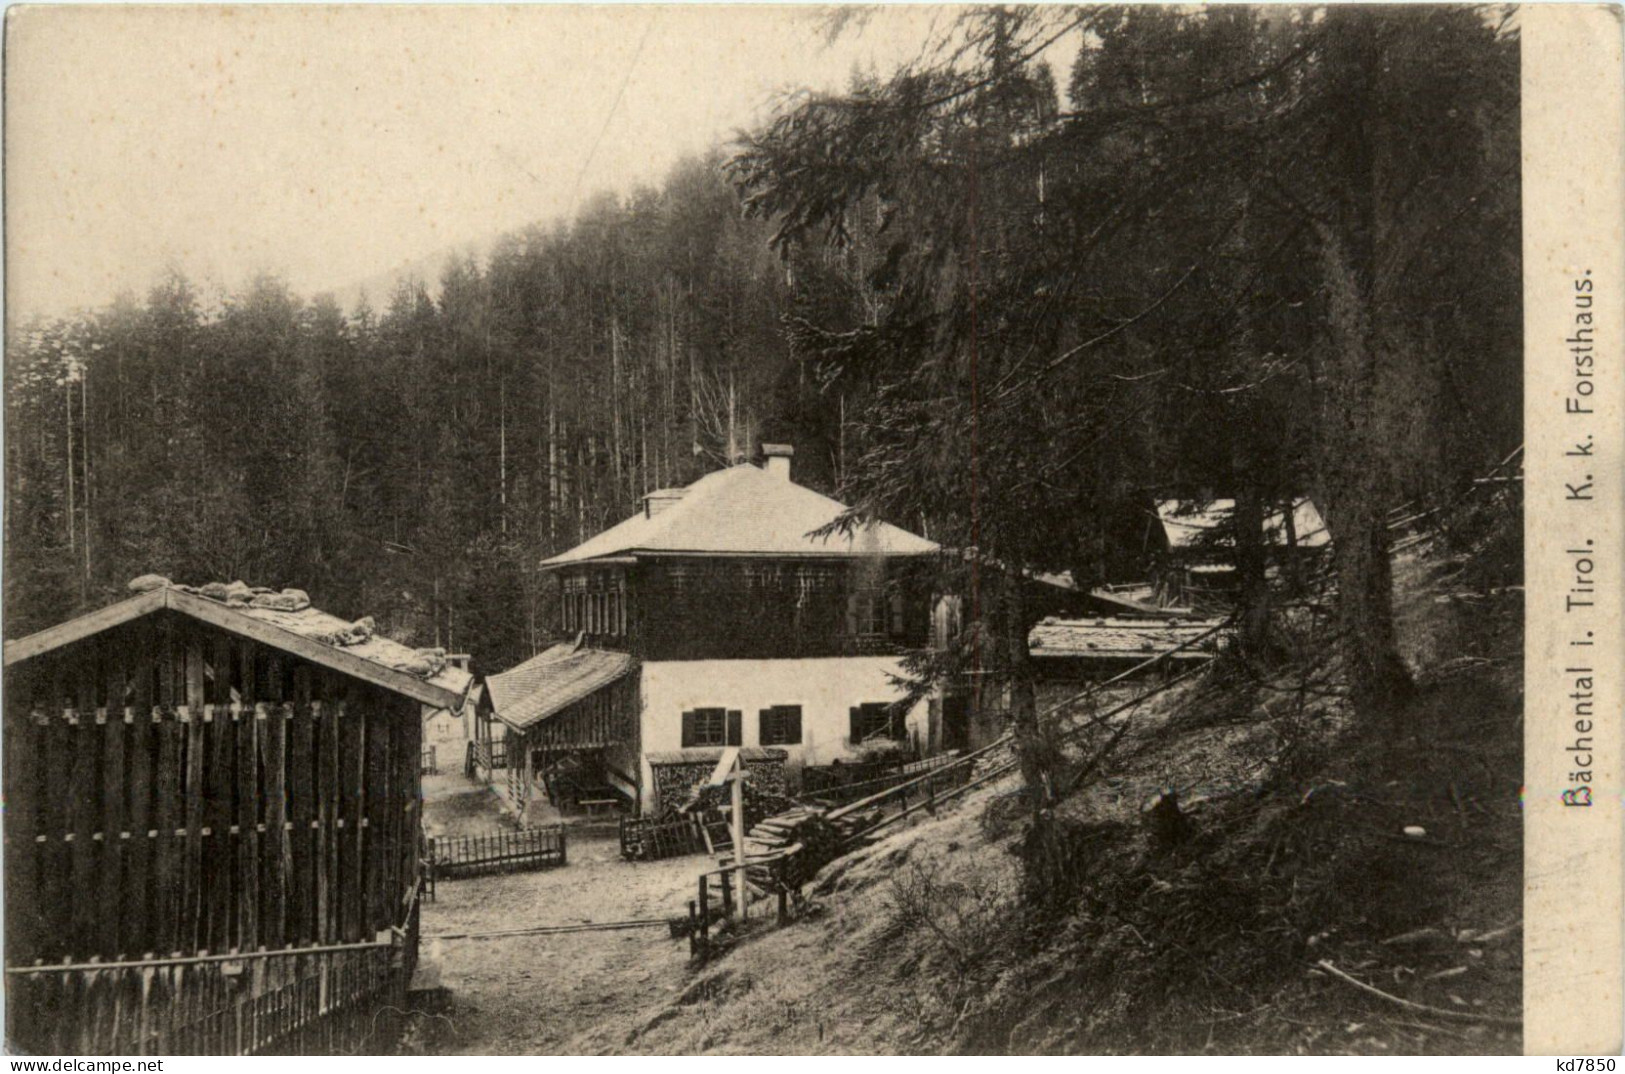 Bächental In Tirol - Forsthaus - Achenseeorte